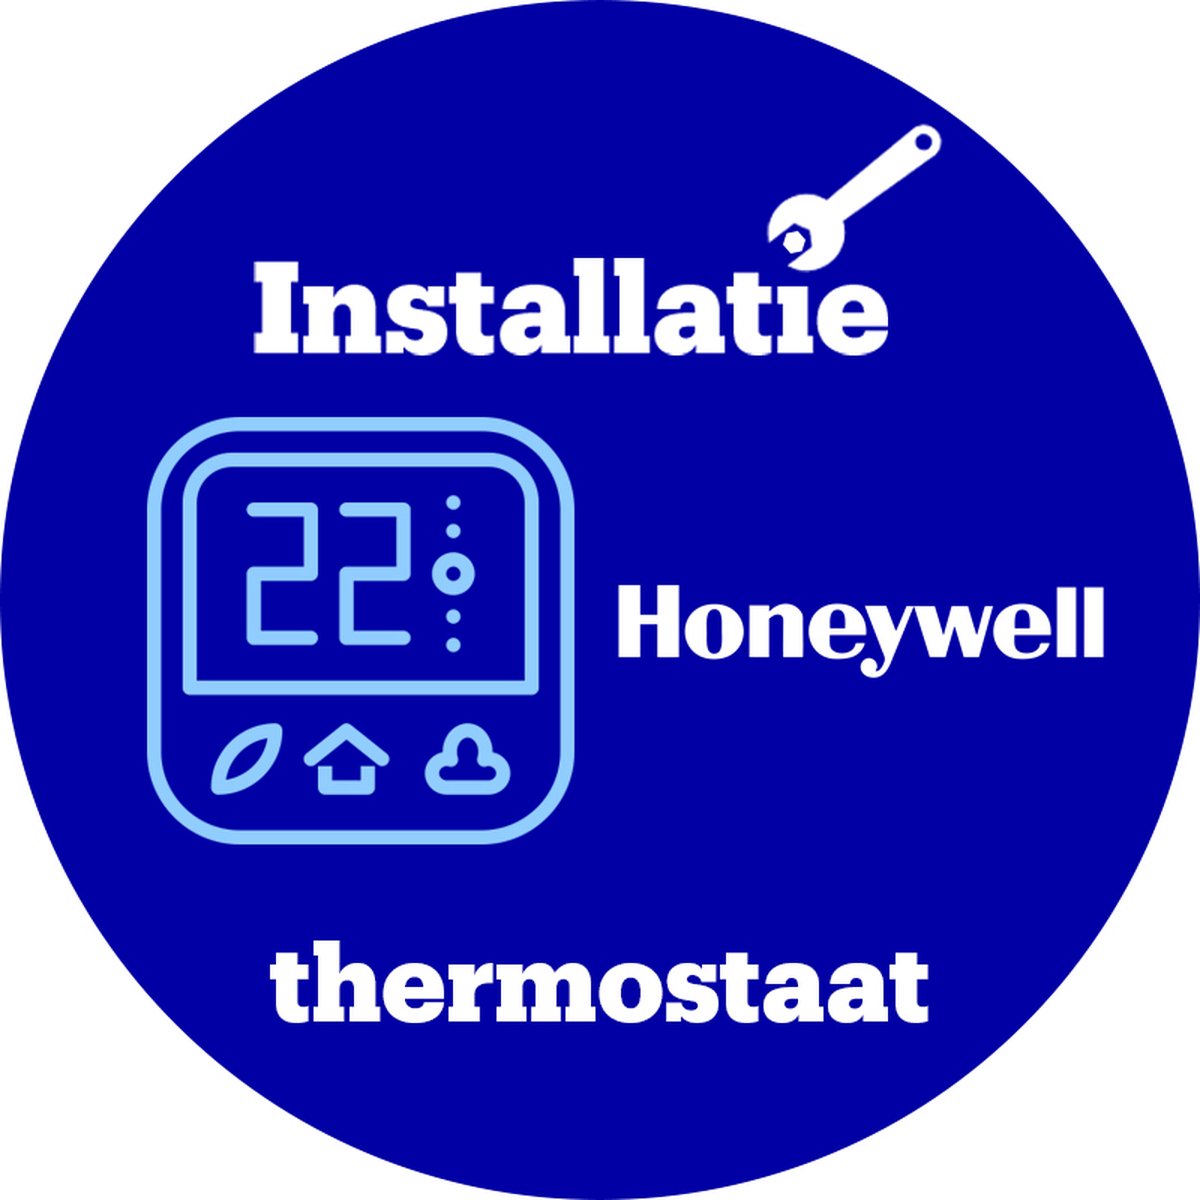 Verlating koel Vakman Installatie Honeywell thermostaat - Door Zoofy in samenwerking met bol.com  -... | bol.com